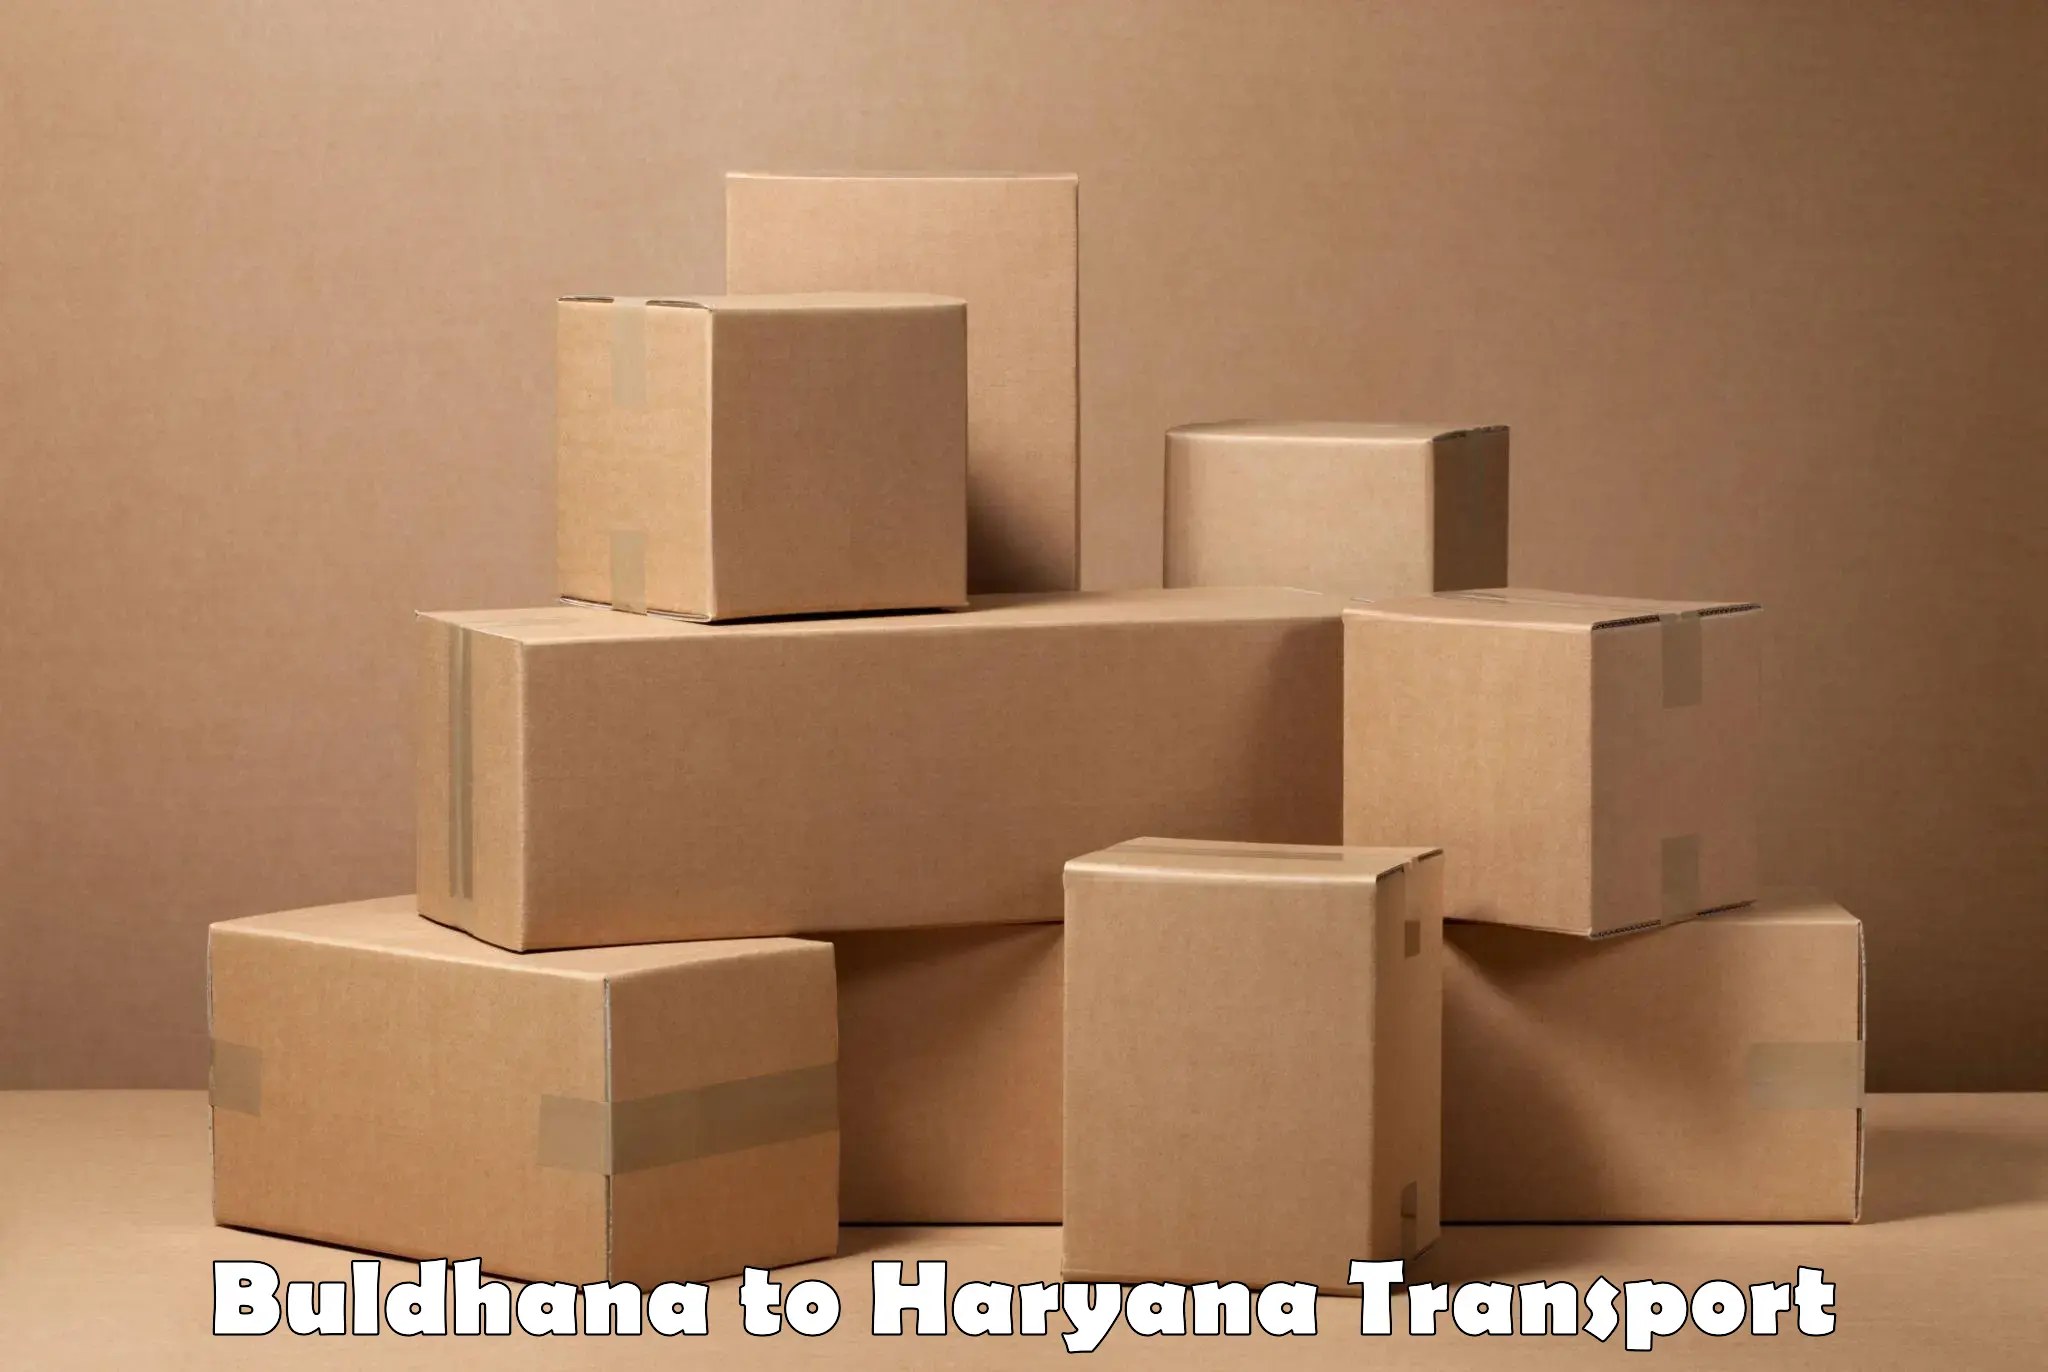 Online transport booking in Buldhana to Dharuhera